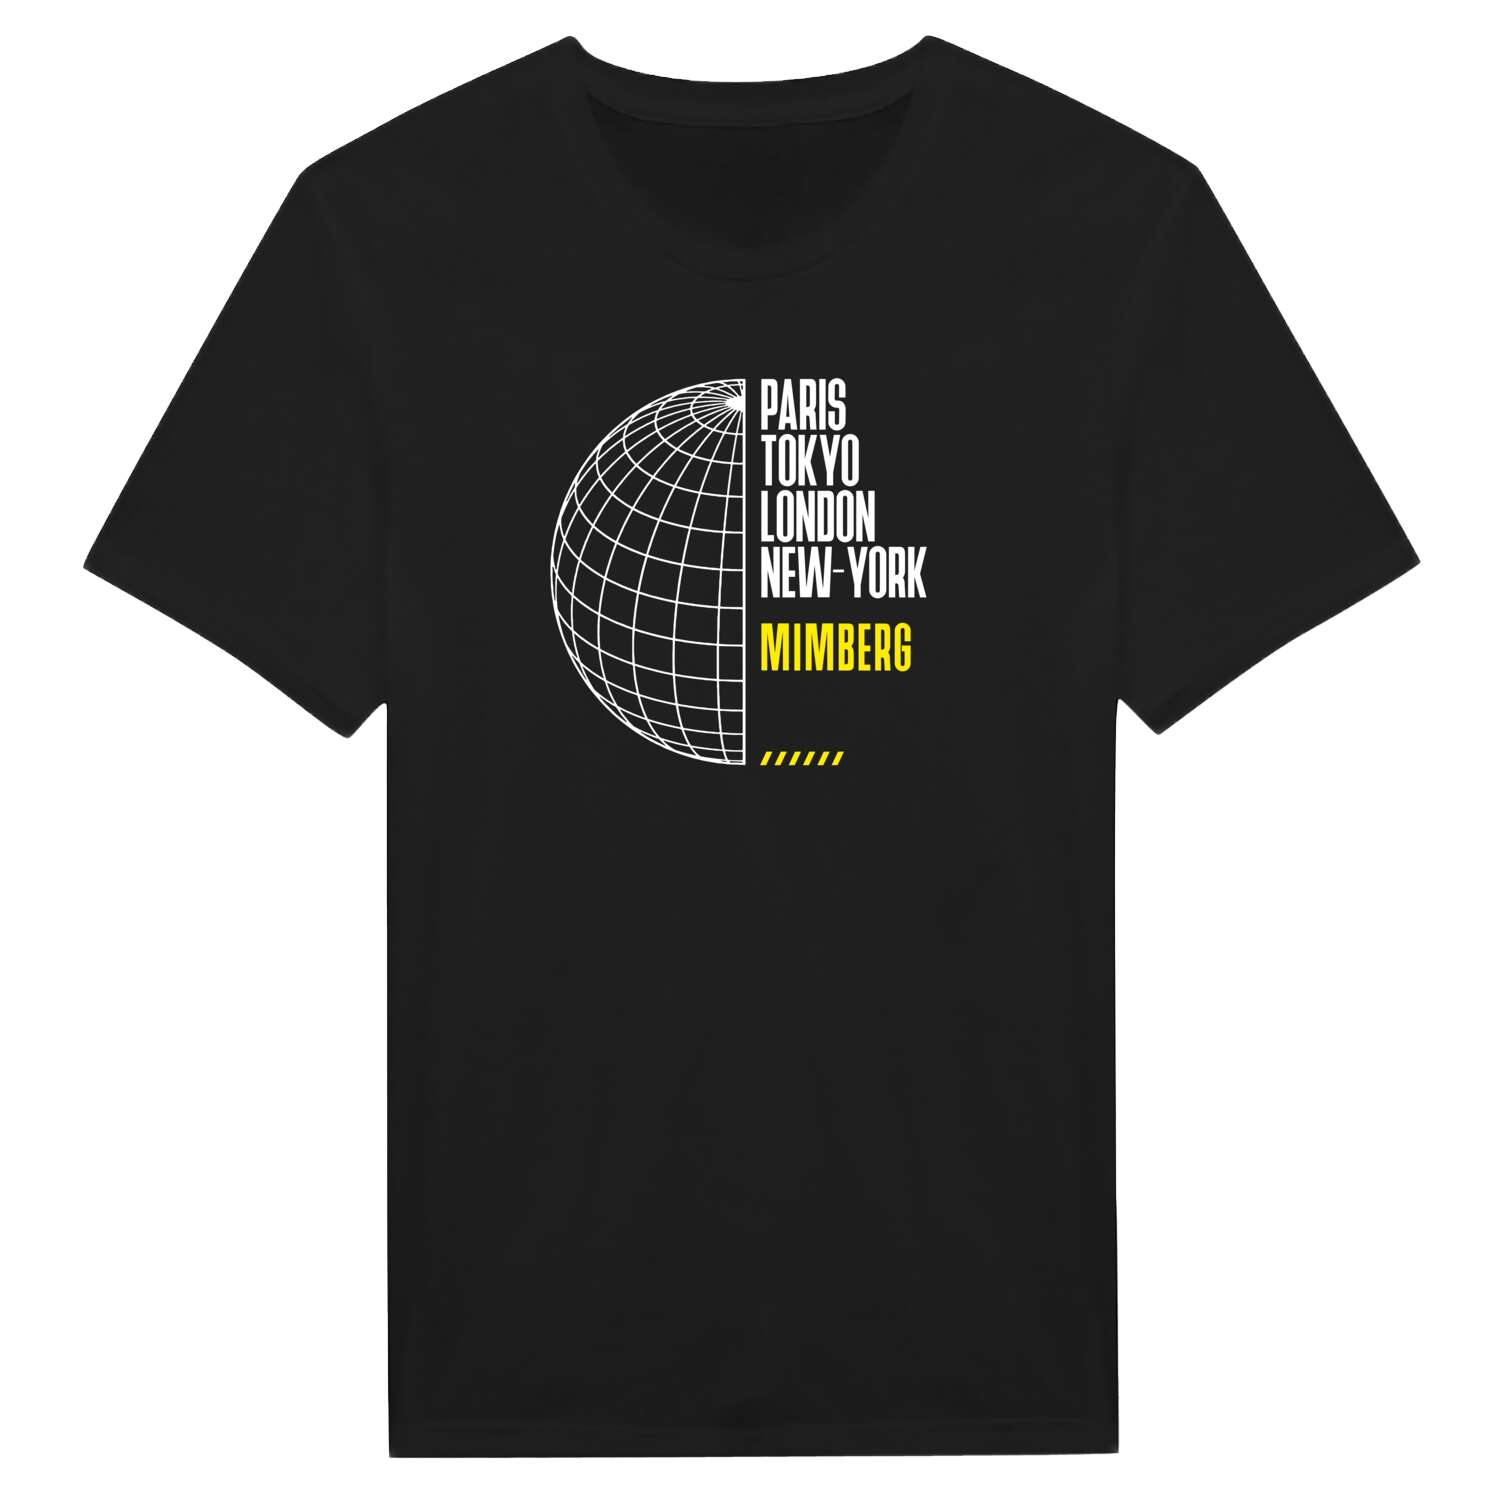 Mimberg T-Shirt »Paris Tokyo London«